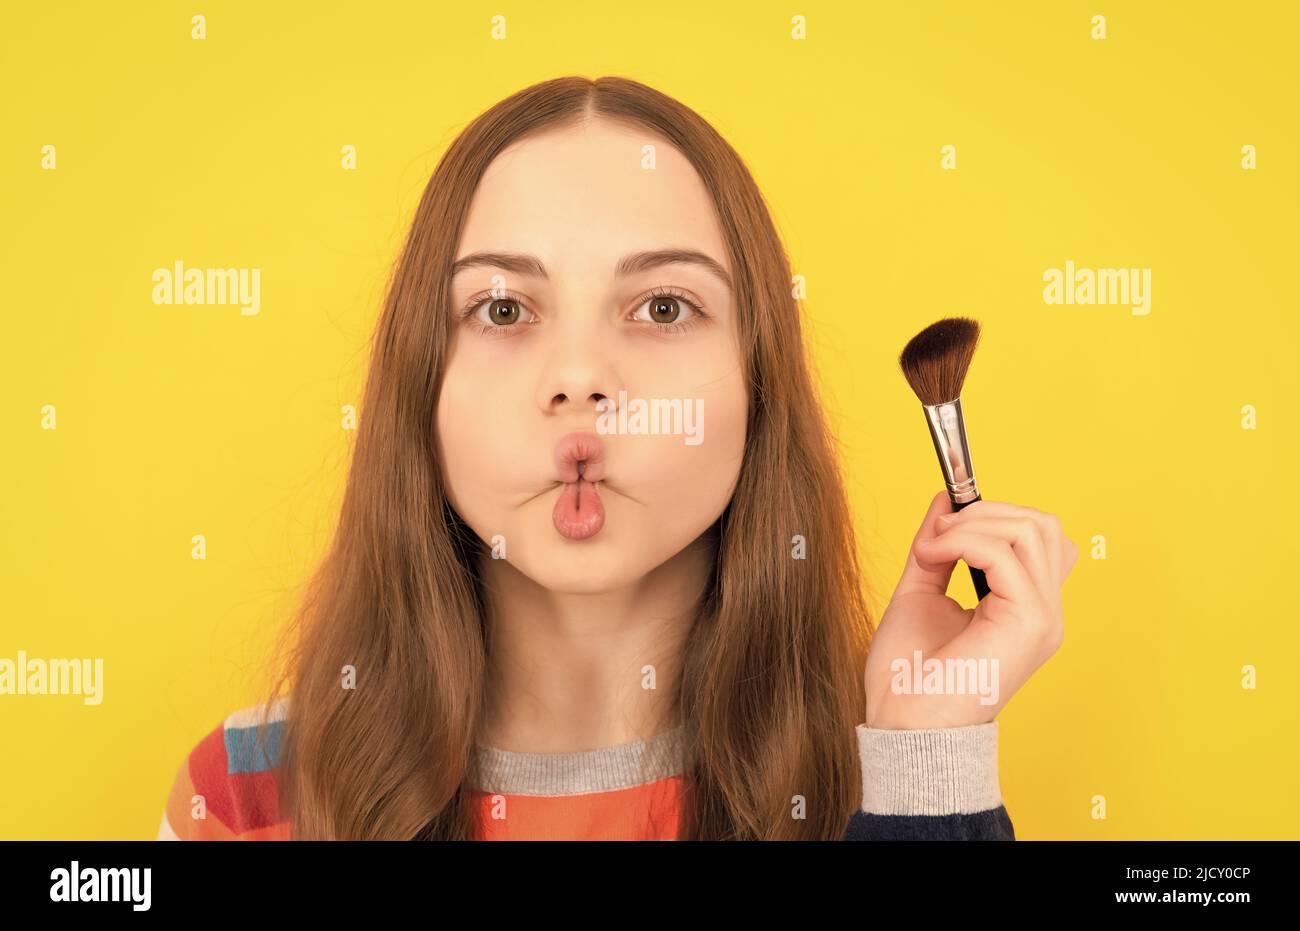 Portrait de l'enfant faisant drôle de poissons lèvres visage tenant la brosse en poudre pour appliquer des cosmétiques, maquillage Banque D'Images